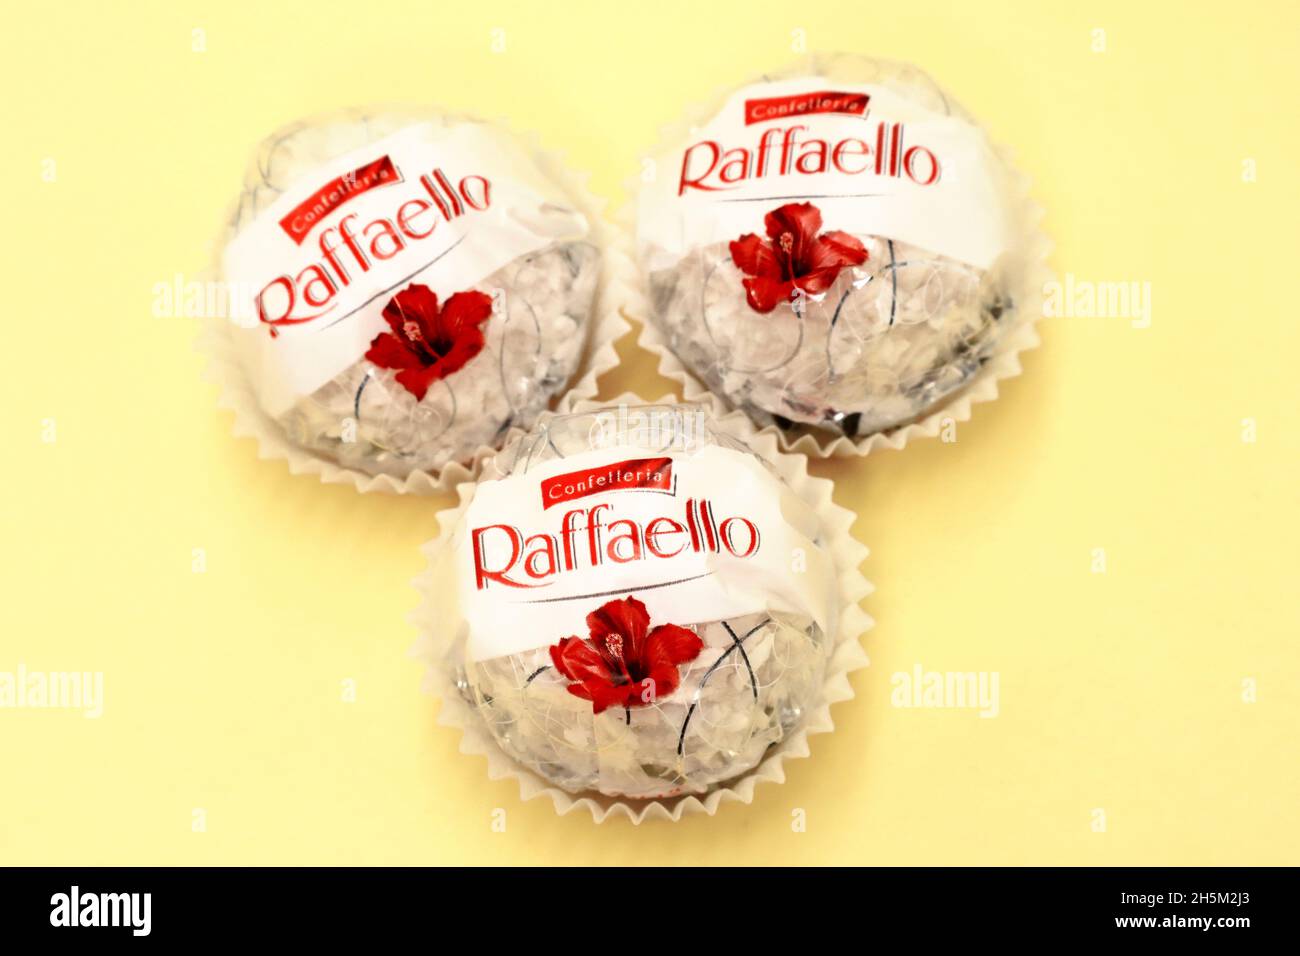 Fichier:Raffaello - Ferrero.jpg — Wikipédia